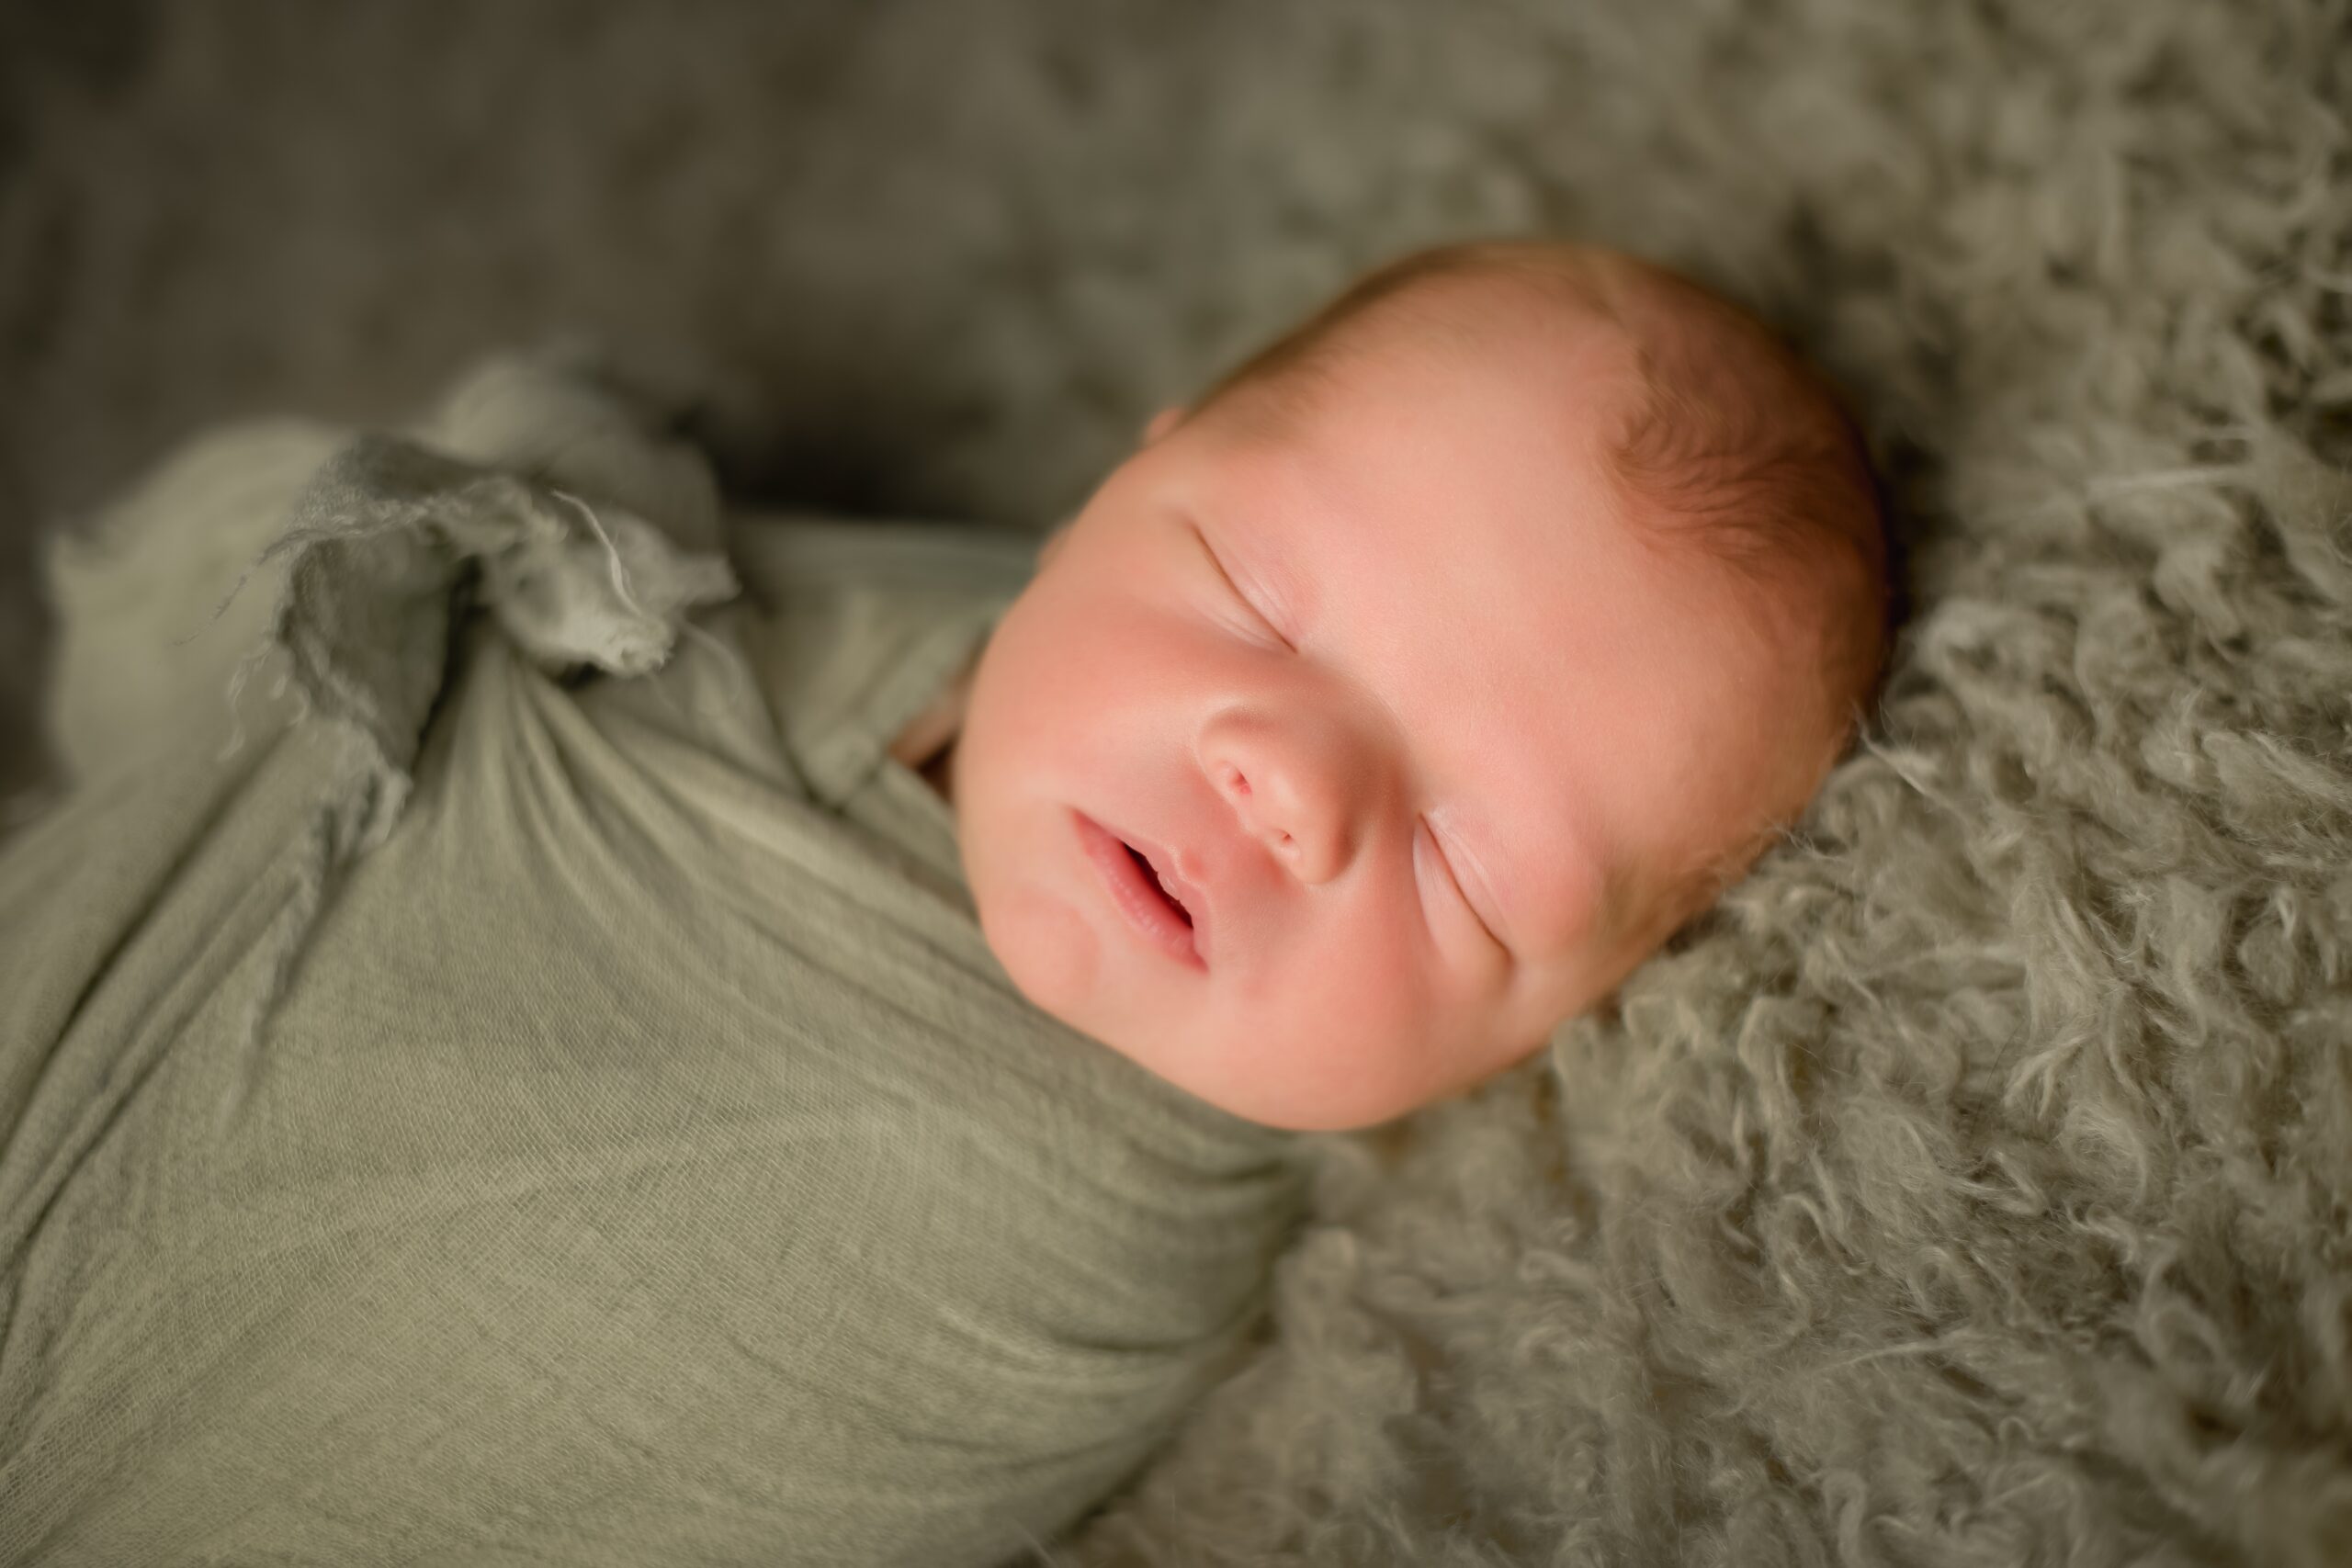 20210331  85S5680 Edit scaled - Portfolio: Infant Photography